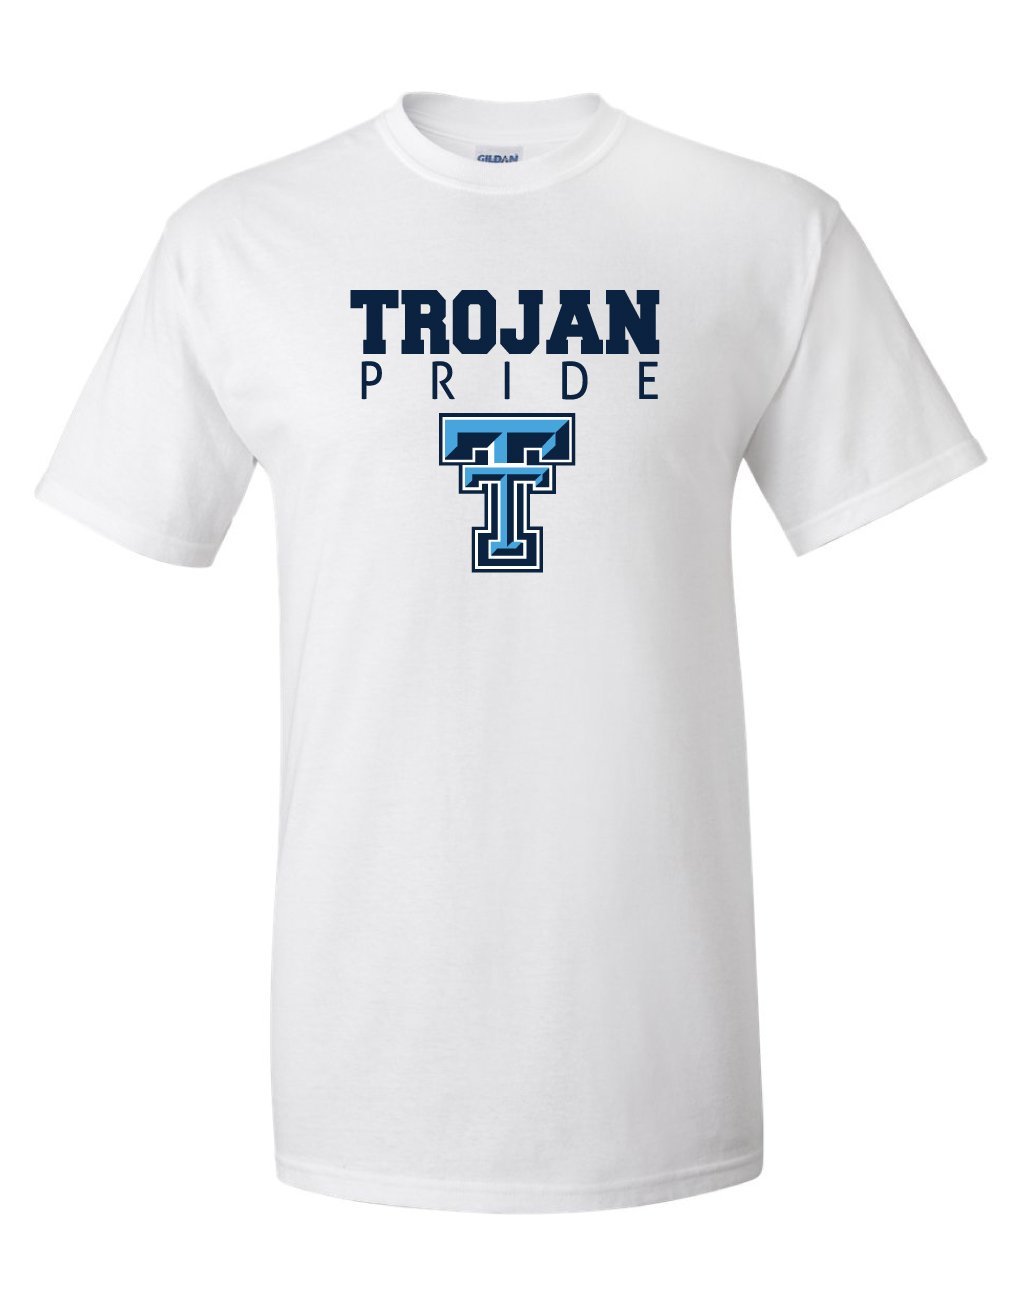 Triopia Trojans - Trojan Pride Tshirt